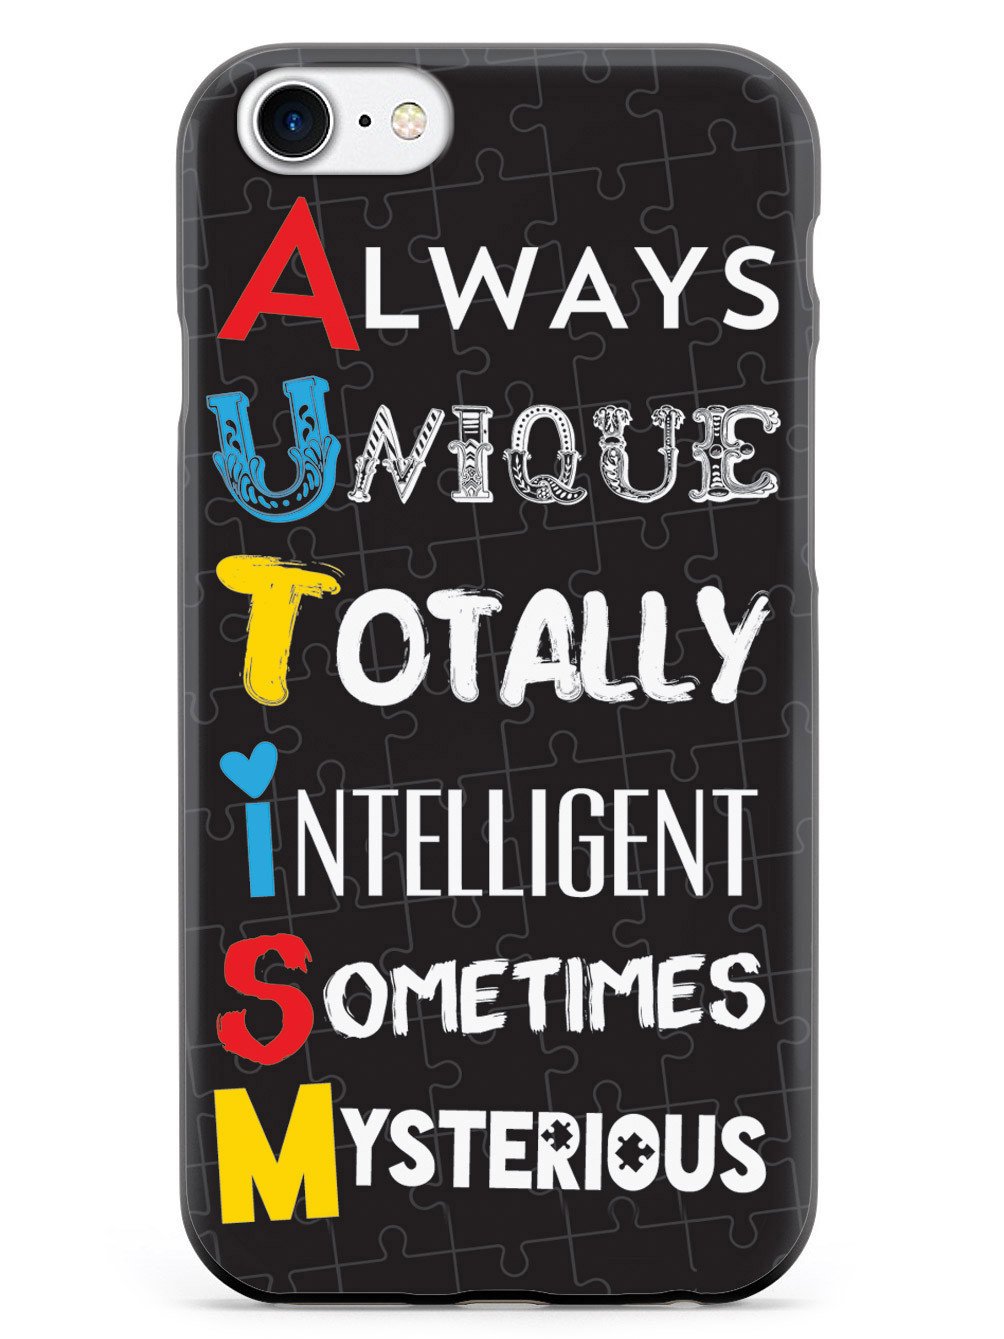 A.U.T.I.S.M - Autism awareness Case